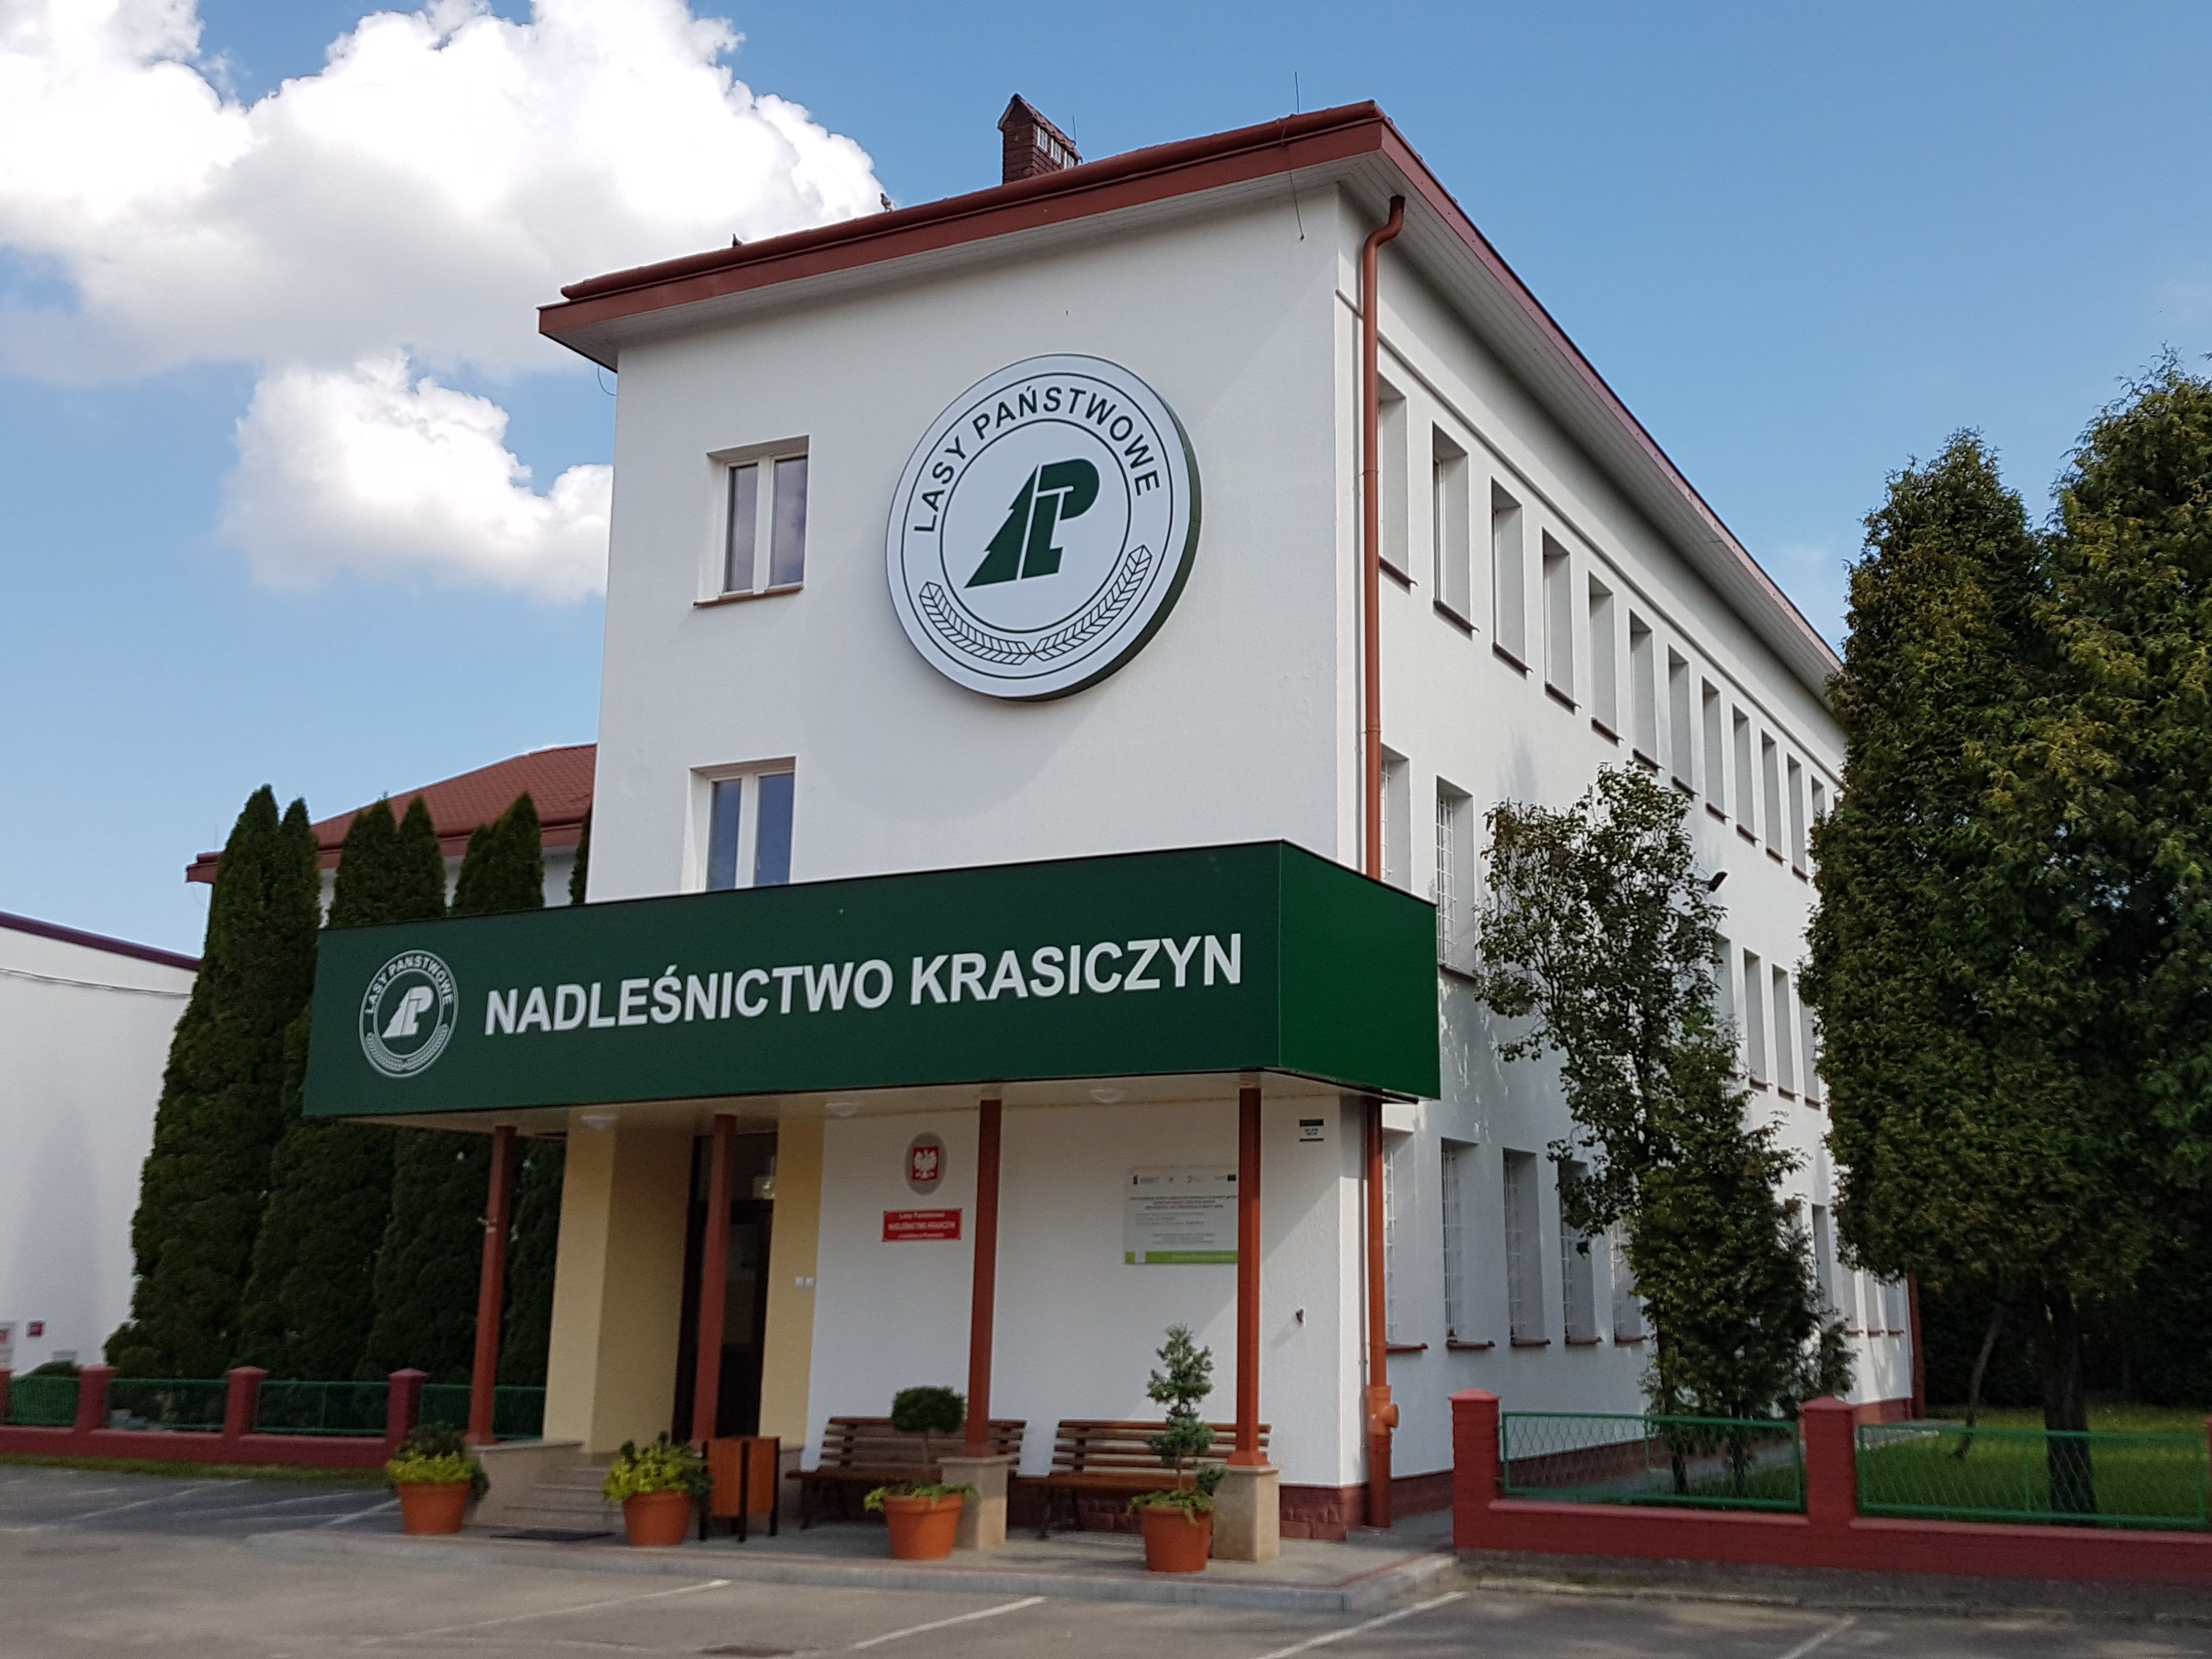 Siedziba Nadleśnictwo Krasiczyn z siedzibą w Przemyślu